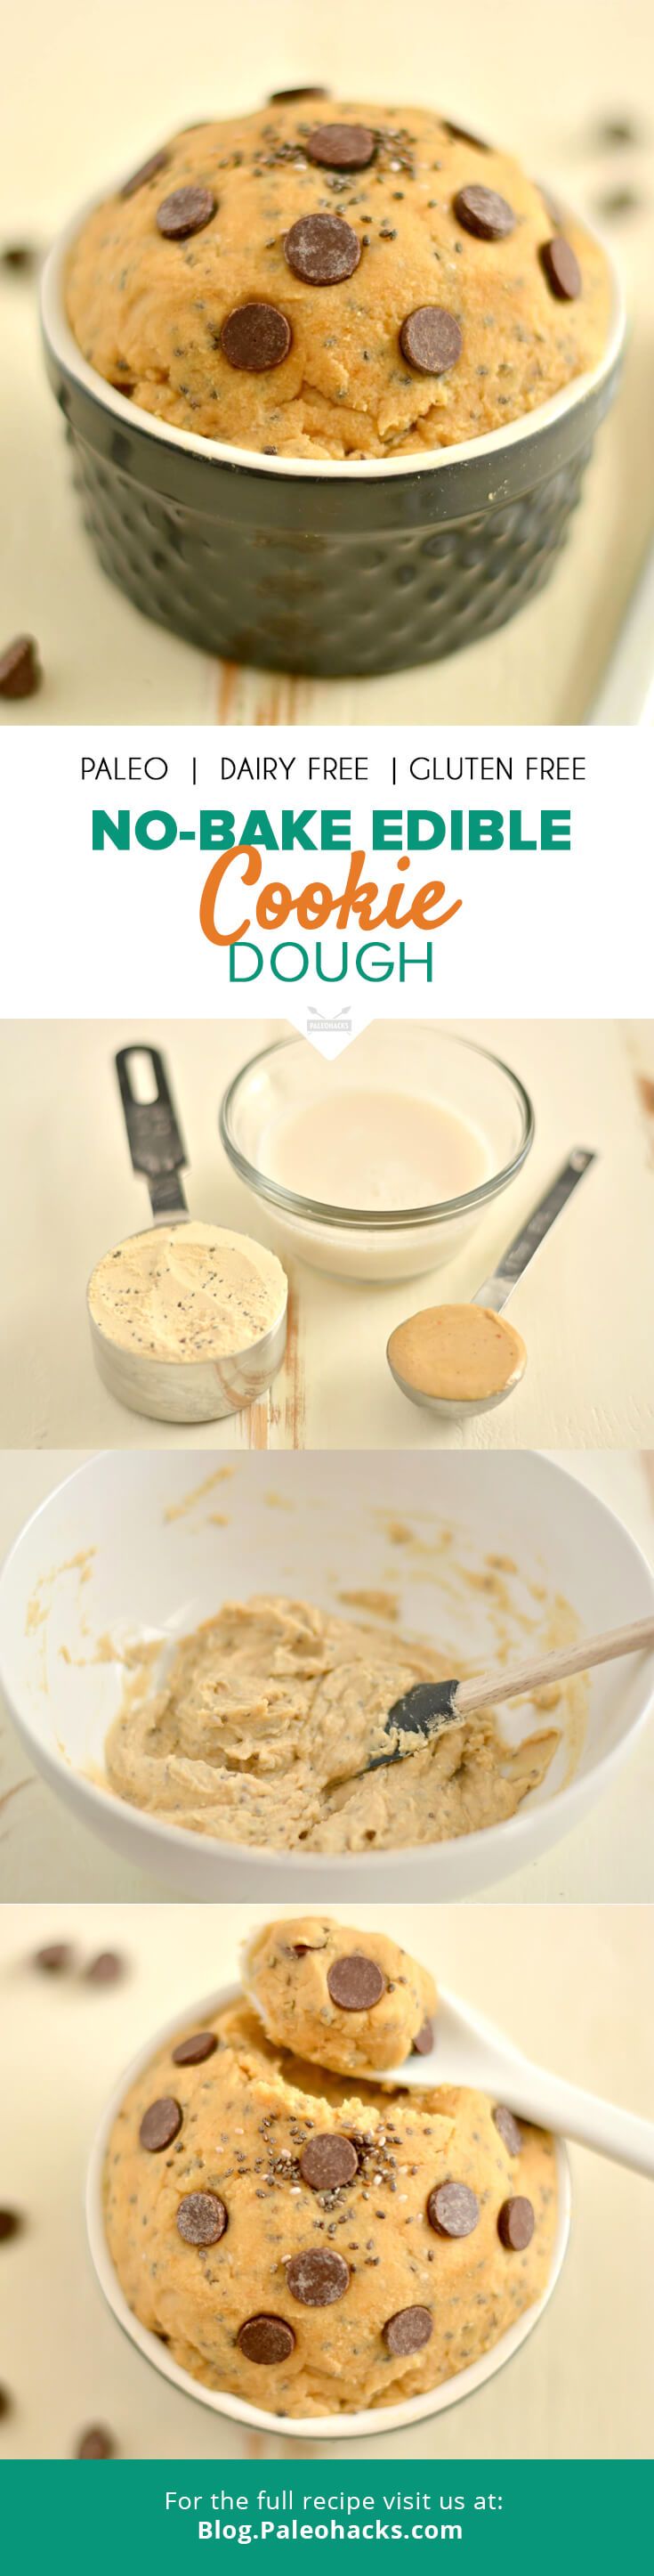 Traditional-PIN-No-bake-edible-cookie-dough